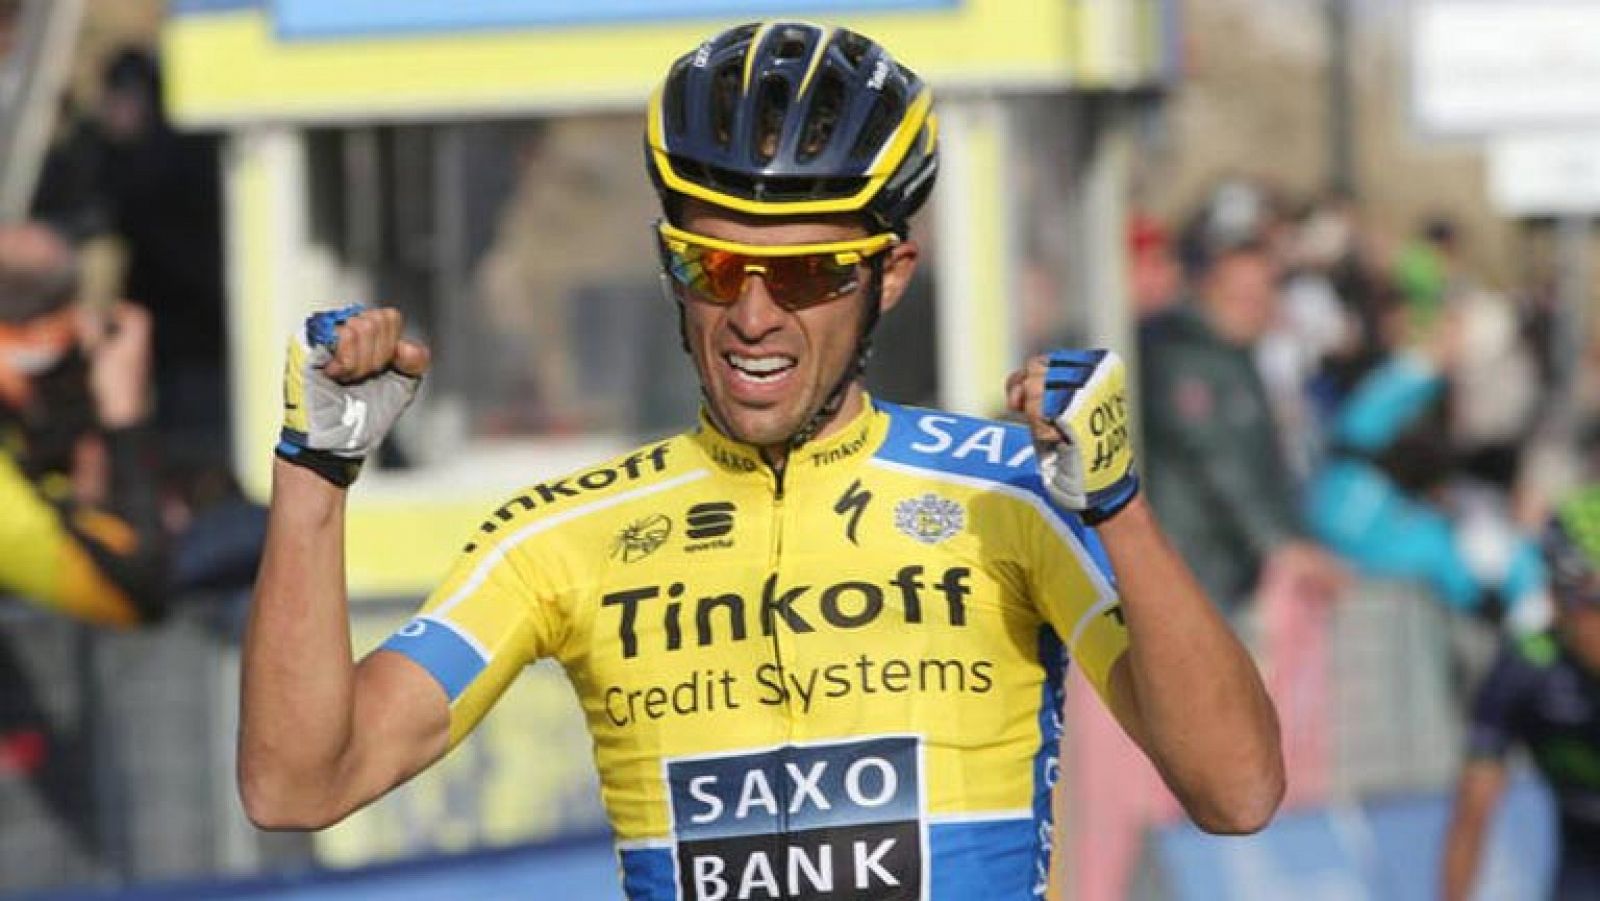 El ciclista español Alberto Contador, del equipo Saxo Tinkoff, es el nuevo líder de la prueba italiana Tirreno-Adriático al imponerse en la quinta etapa entre Amatrice y el alto de Guardiagrece, de 192 kilómetros.

La quinta jornada, entre Amatrice y Guardiagrece, de 192 kilómetros y considerada de media montaña, sirvió para que el español dejara claro que vuelve a ser el de hace unos años y que se encuentra en un momento dorado de forma, pues además de las dos etapas de la prueba de los "dos mares" también se anotó una en la portuguesa Vuelta al Algarve.